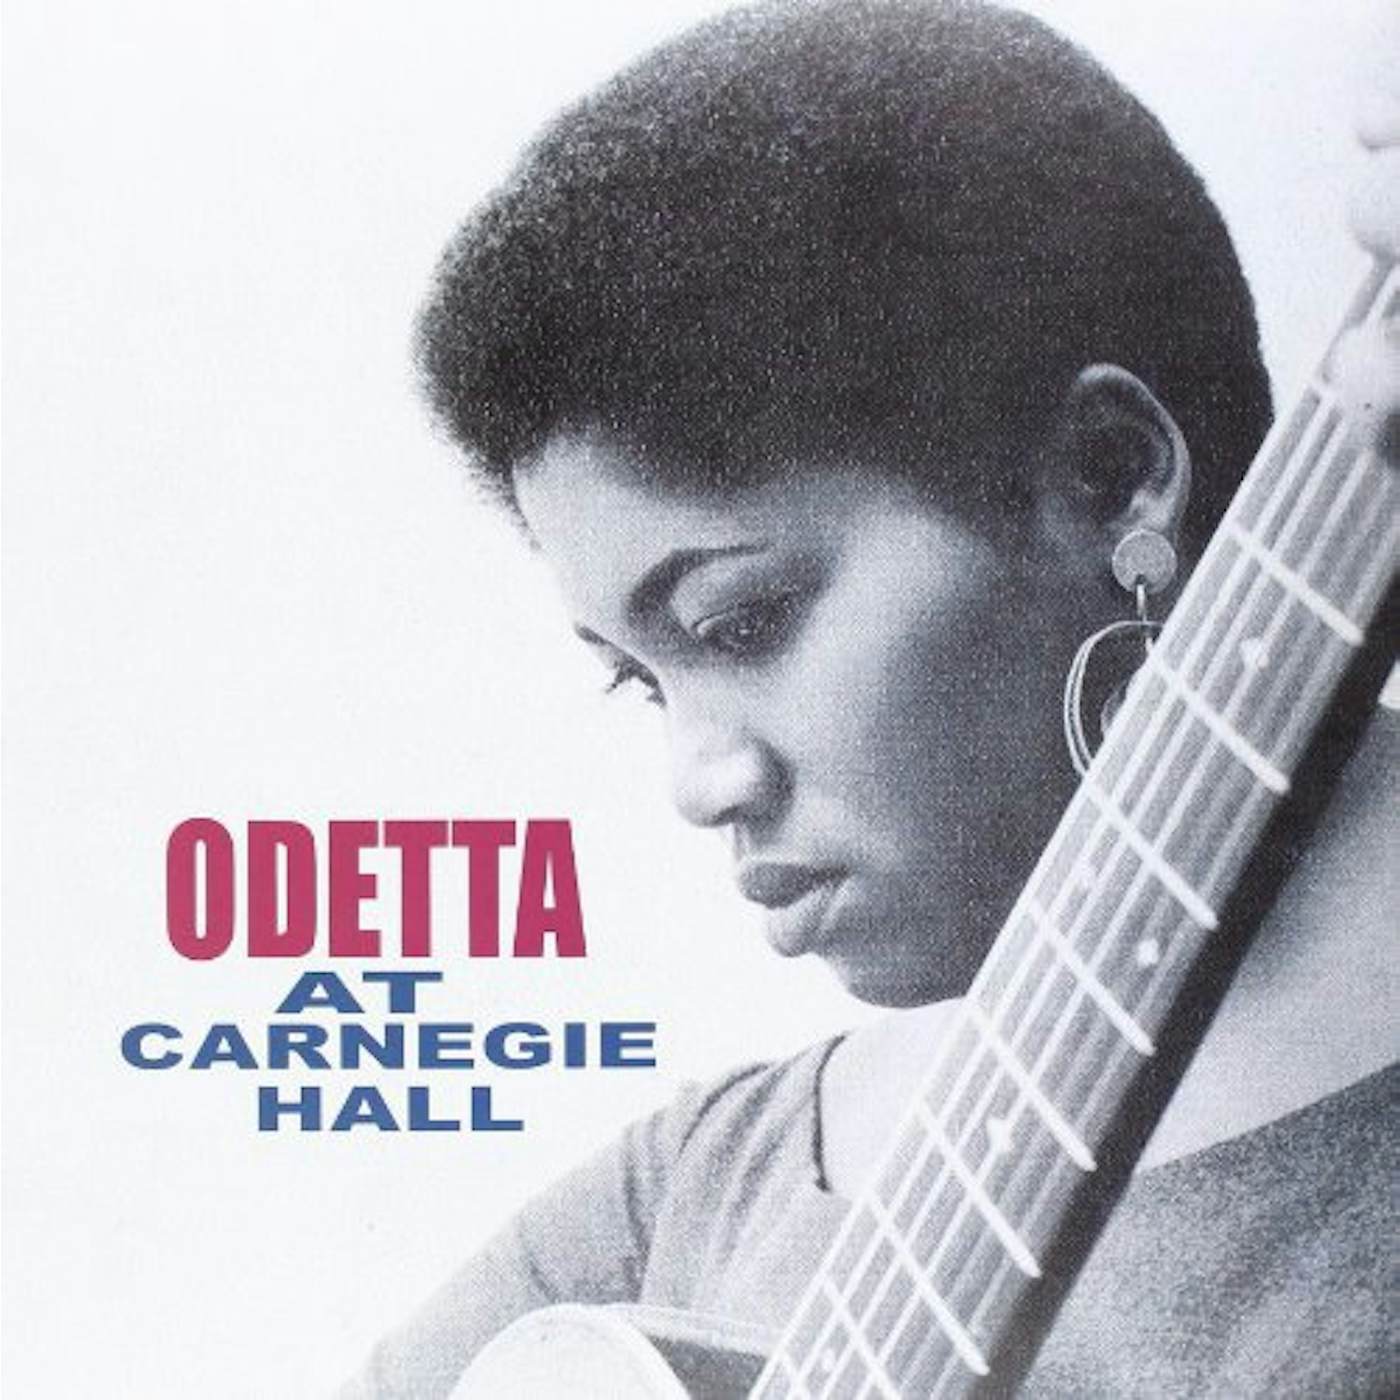 Odetta AT CARNEGIE HALL Vinyl Record